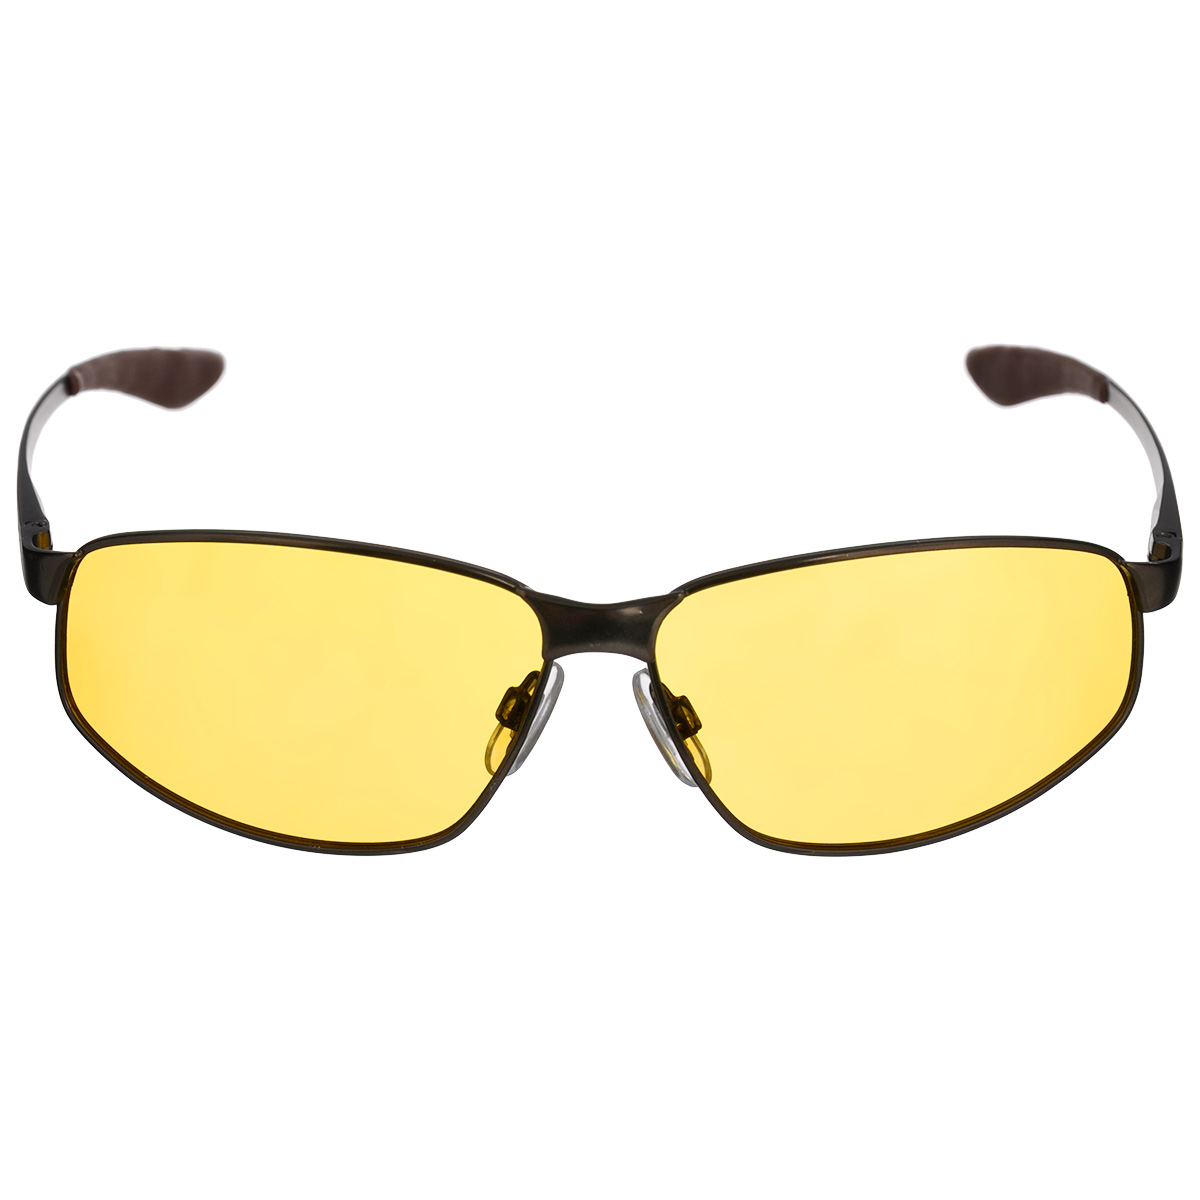 Очки мужские, поляризационные Cafa France, цвет: желтый. CF3108Y